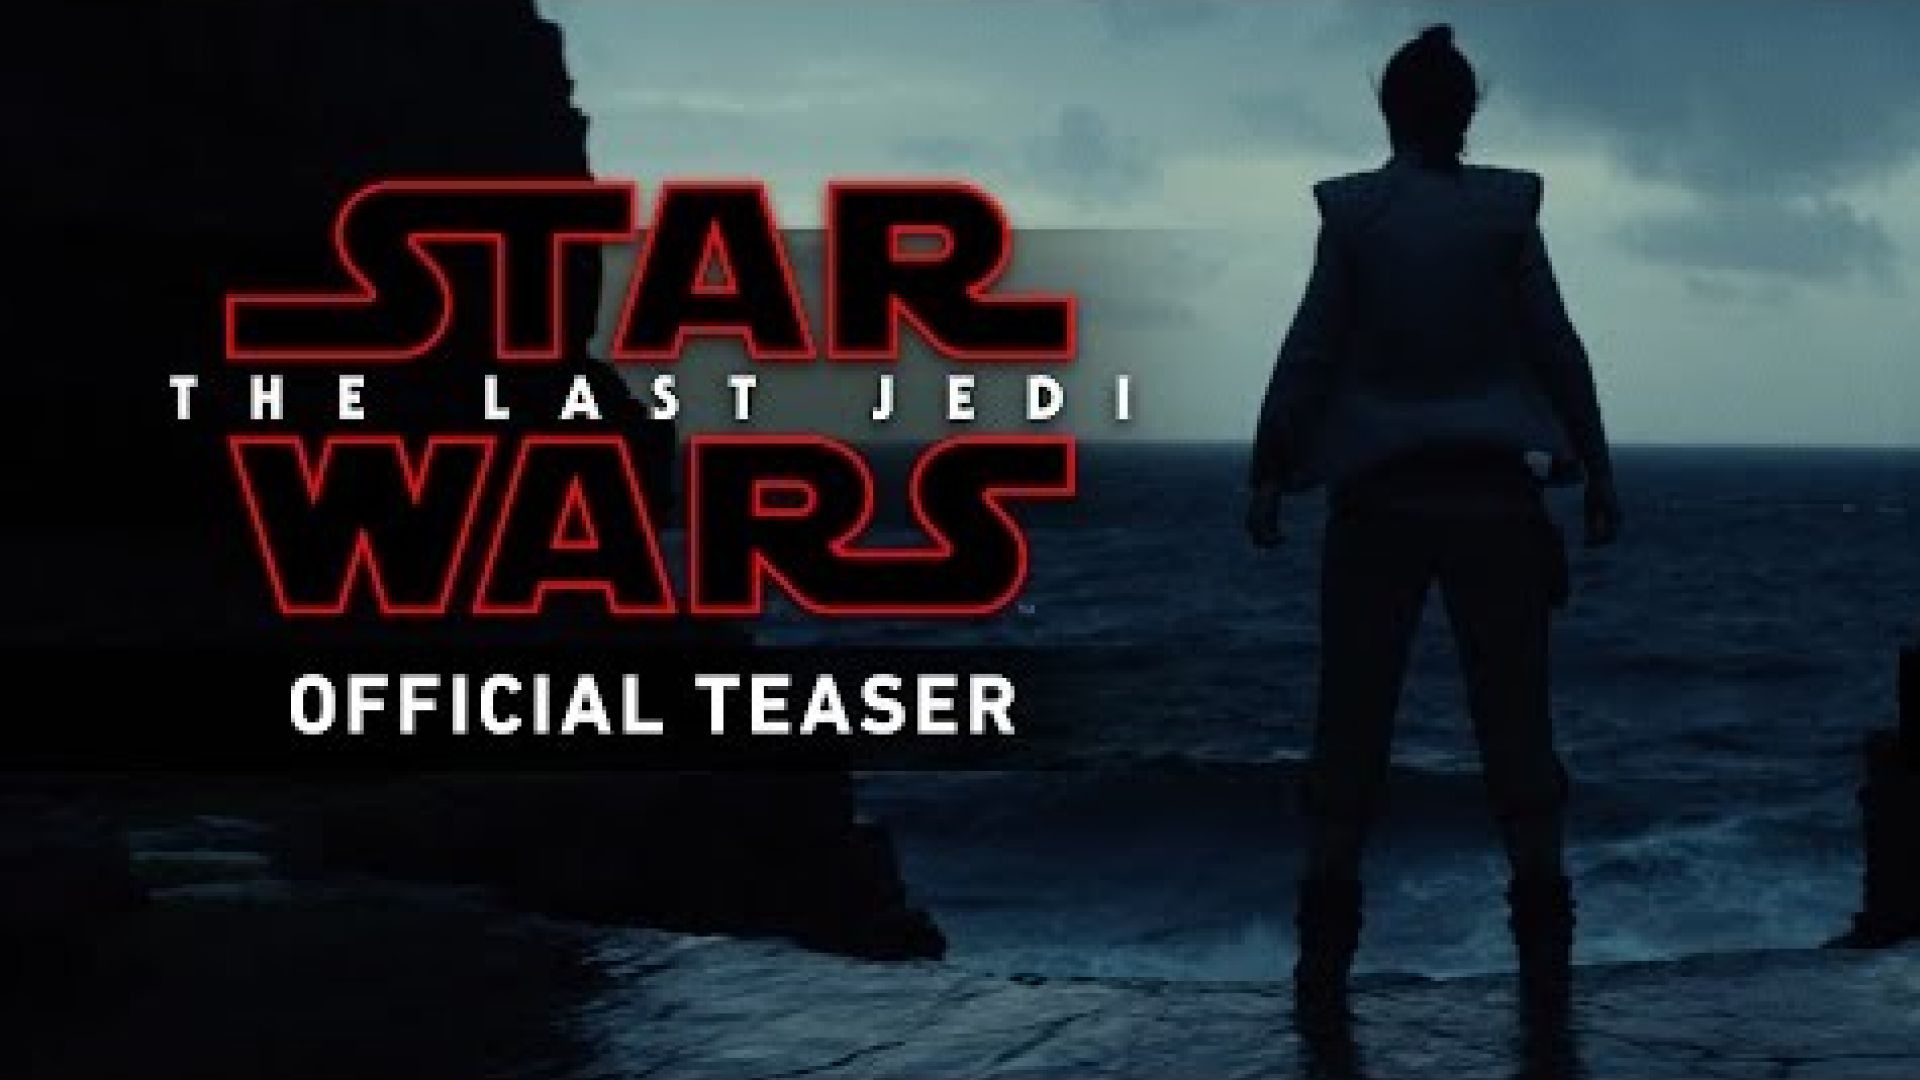 Star Wars: The Last Jedi Teaser